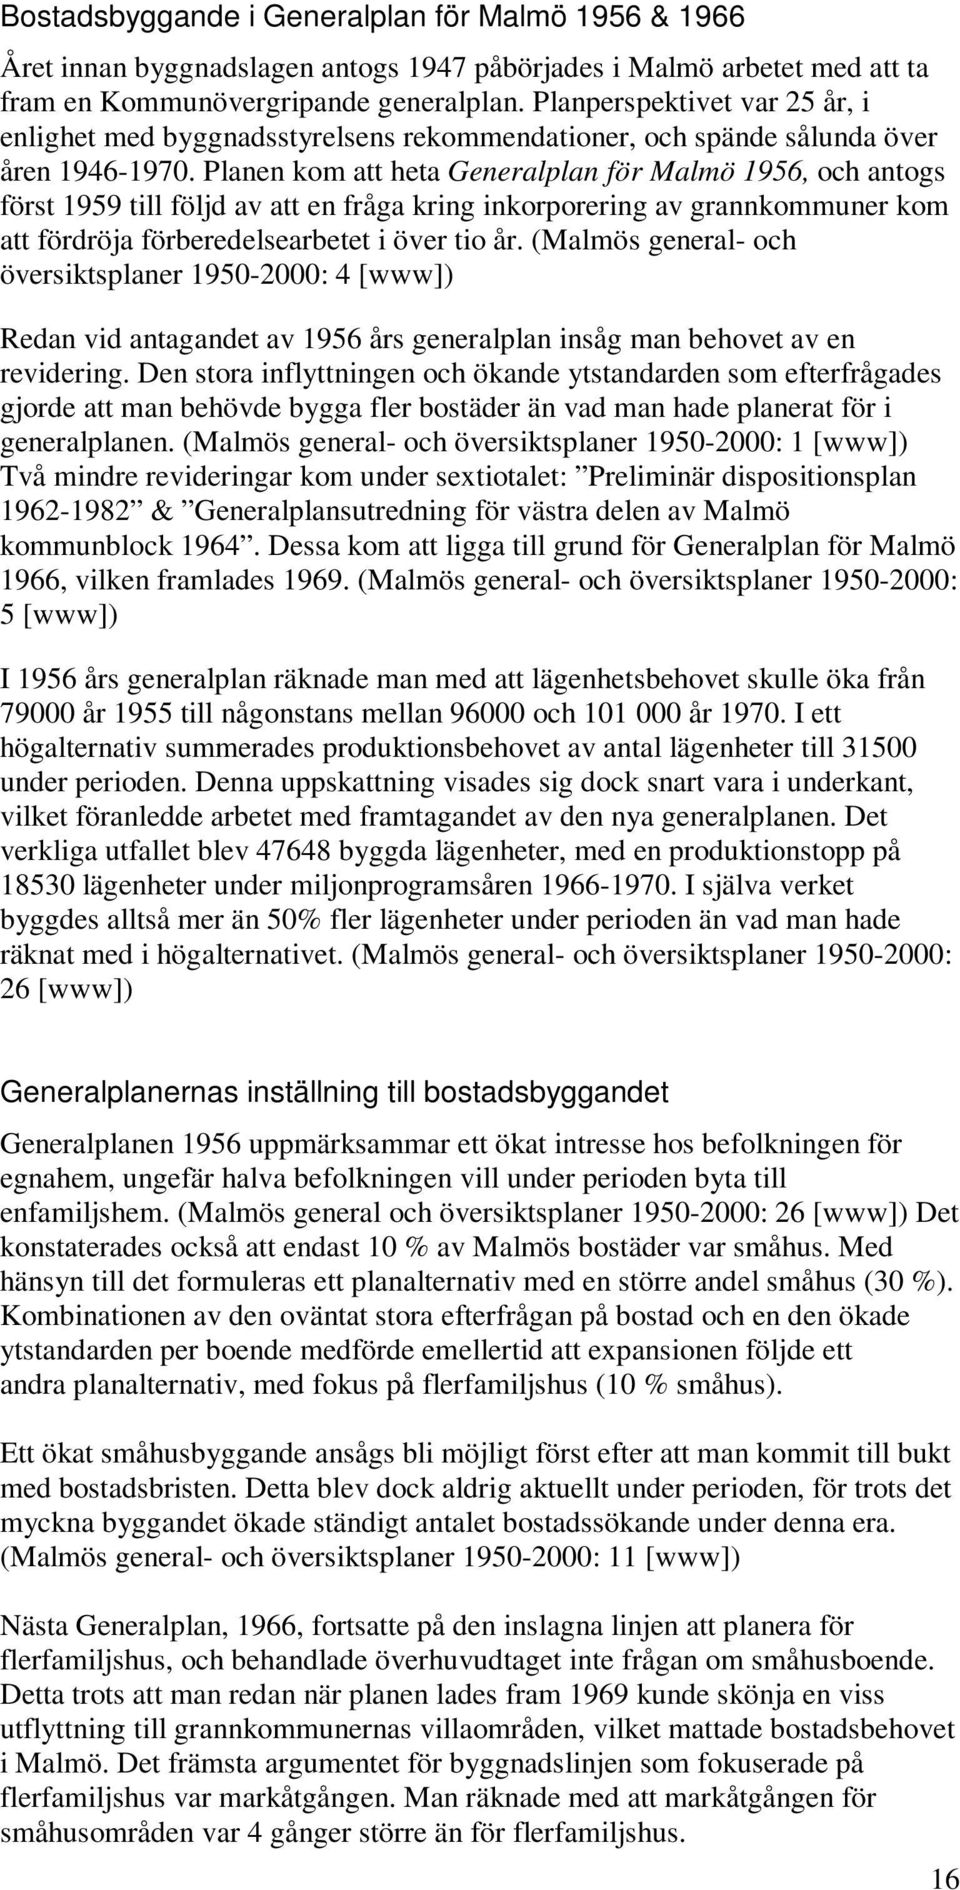 Planen kom att heta Generalplan för Malmö 1956, och antogs först 1959 till följd av att en fråga kring inkorporering av grannkommuner kom att fördröja förberedelsearbetet i över tio år.